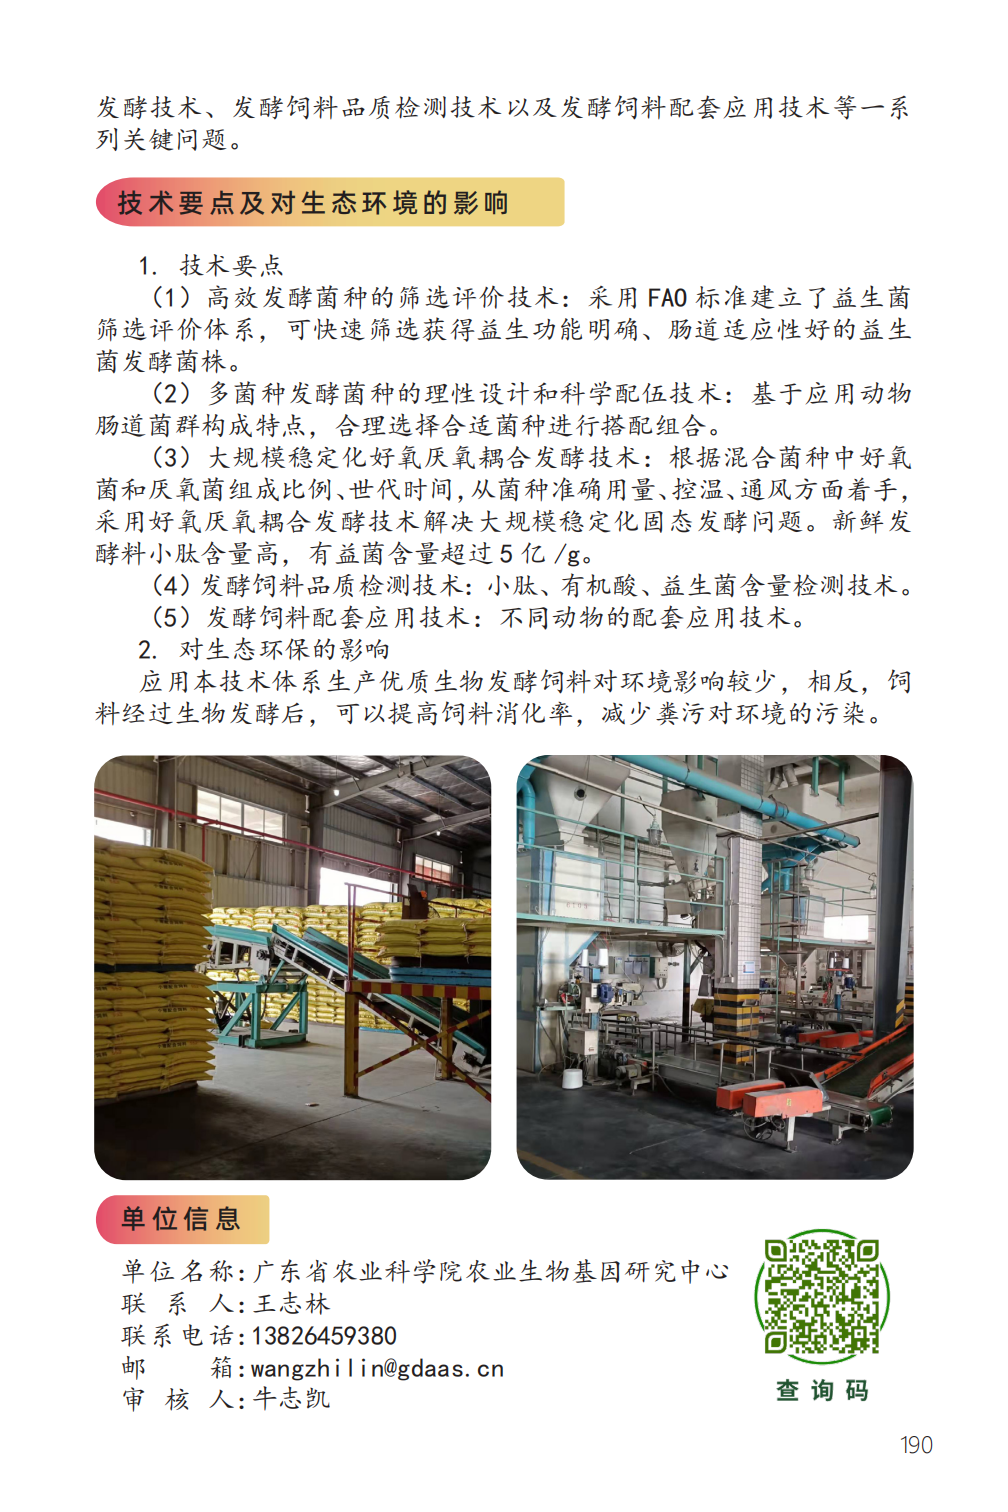 优质生物发酵饲料高效稳定化生产技术-2.png